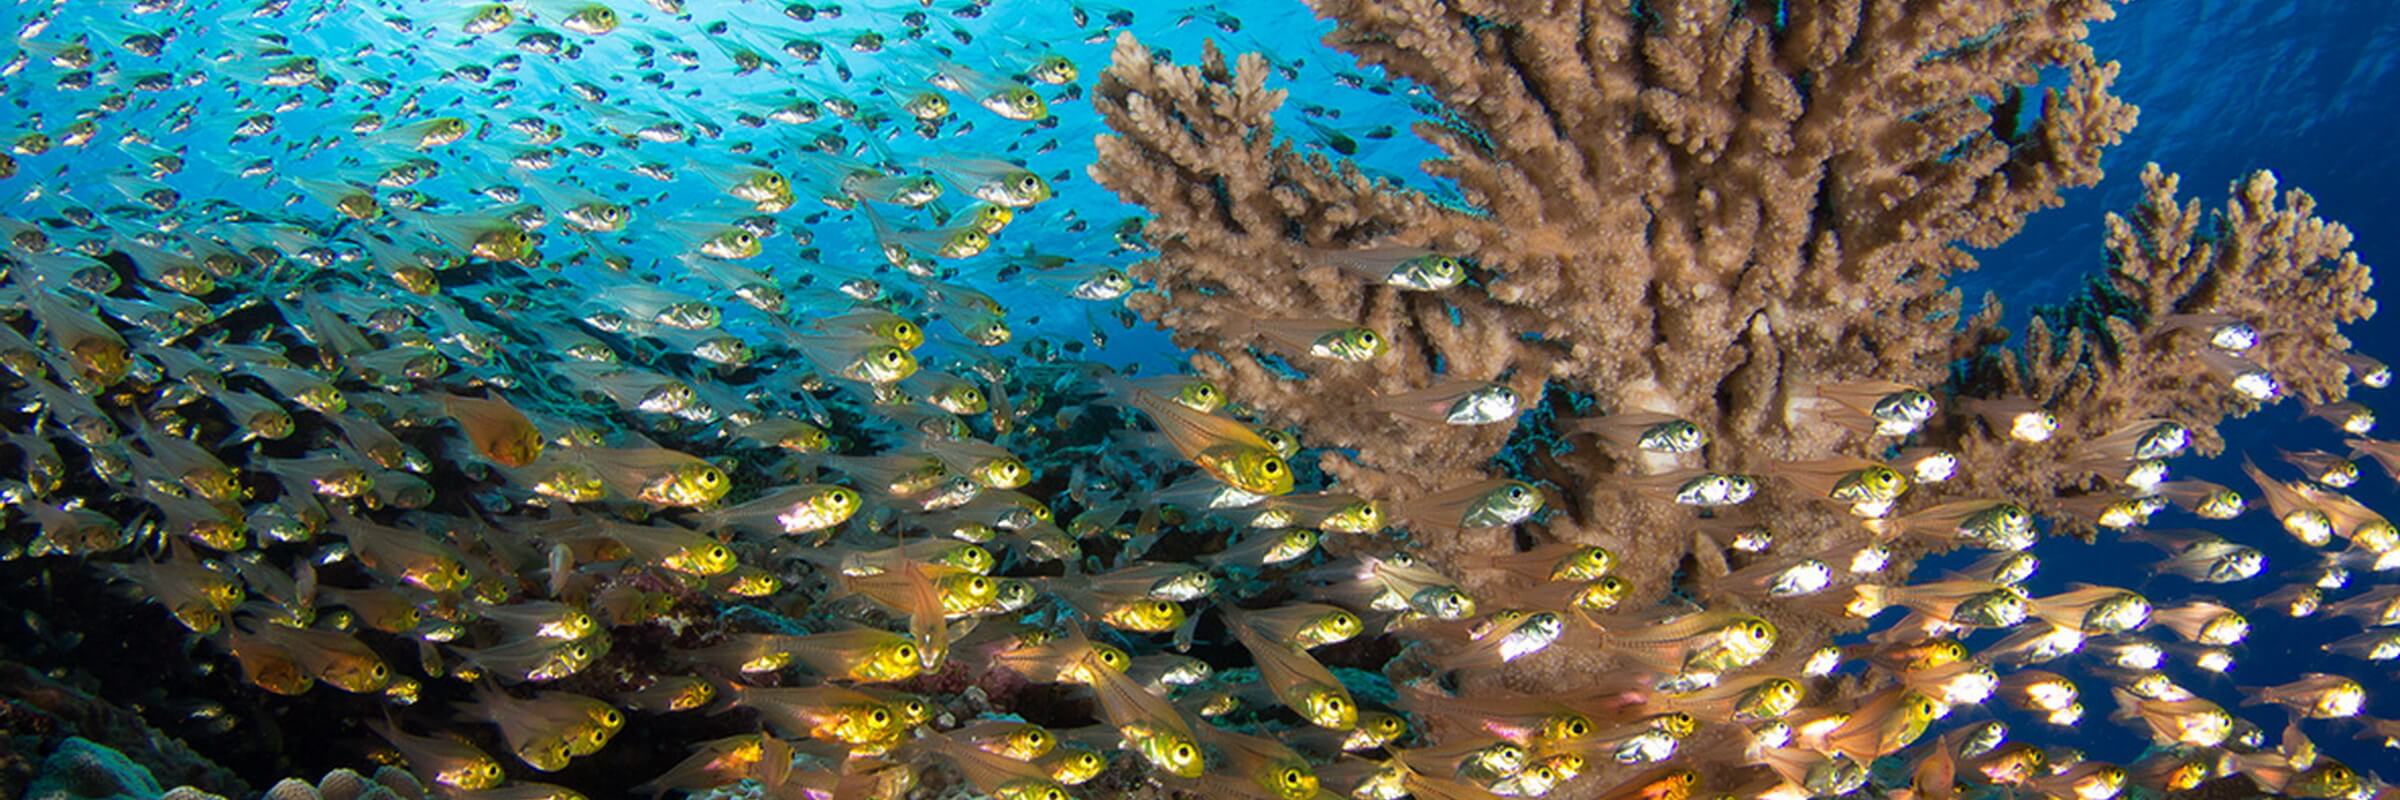 Die farbenprächtige Unterwasserflora und -Fauna rund um Yap beeindruckt selbst erfahrene Taucher.